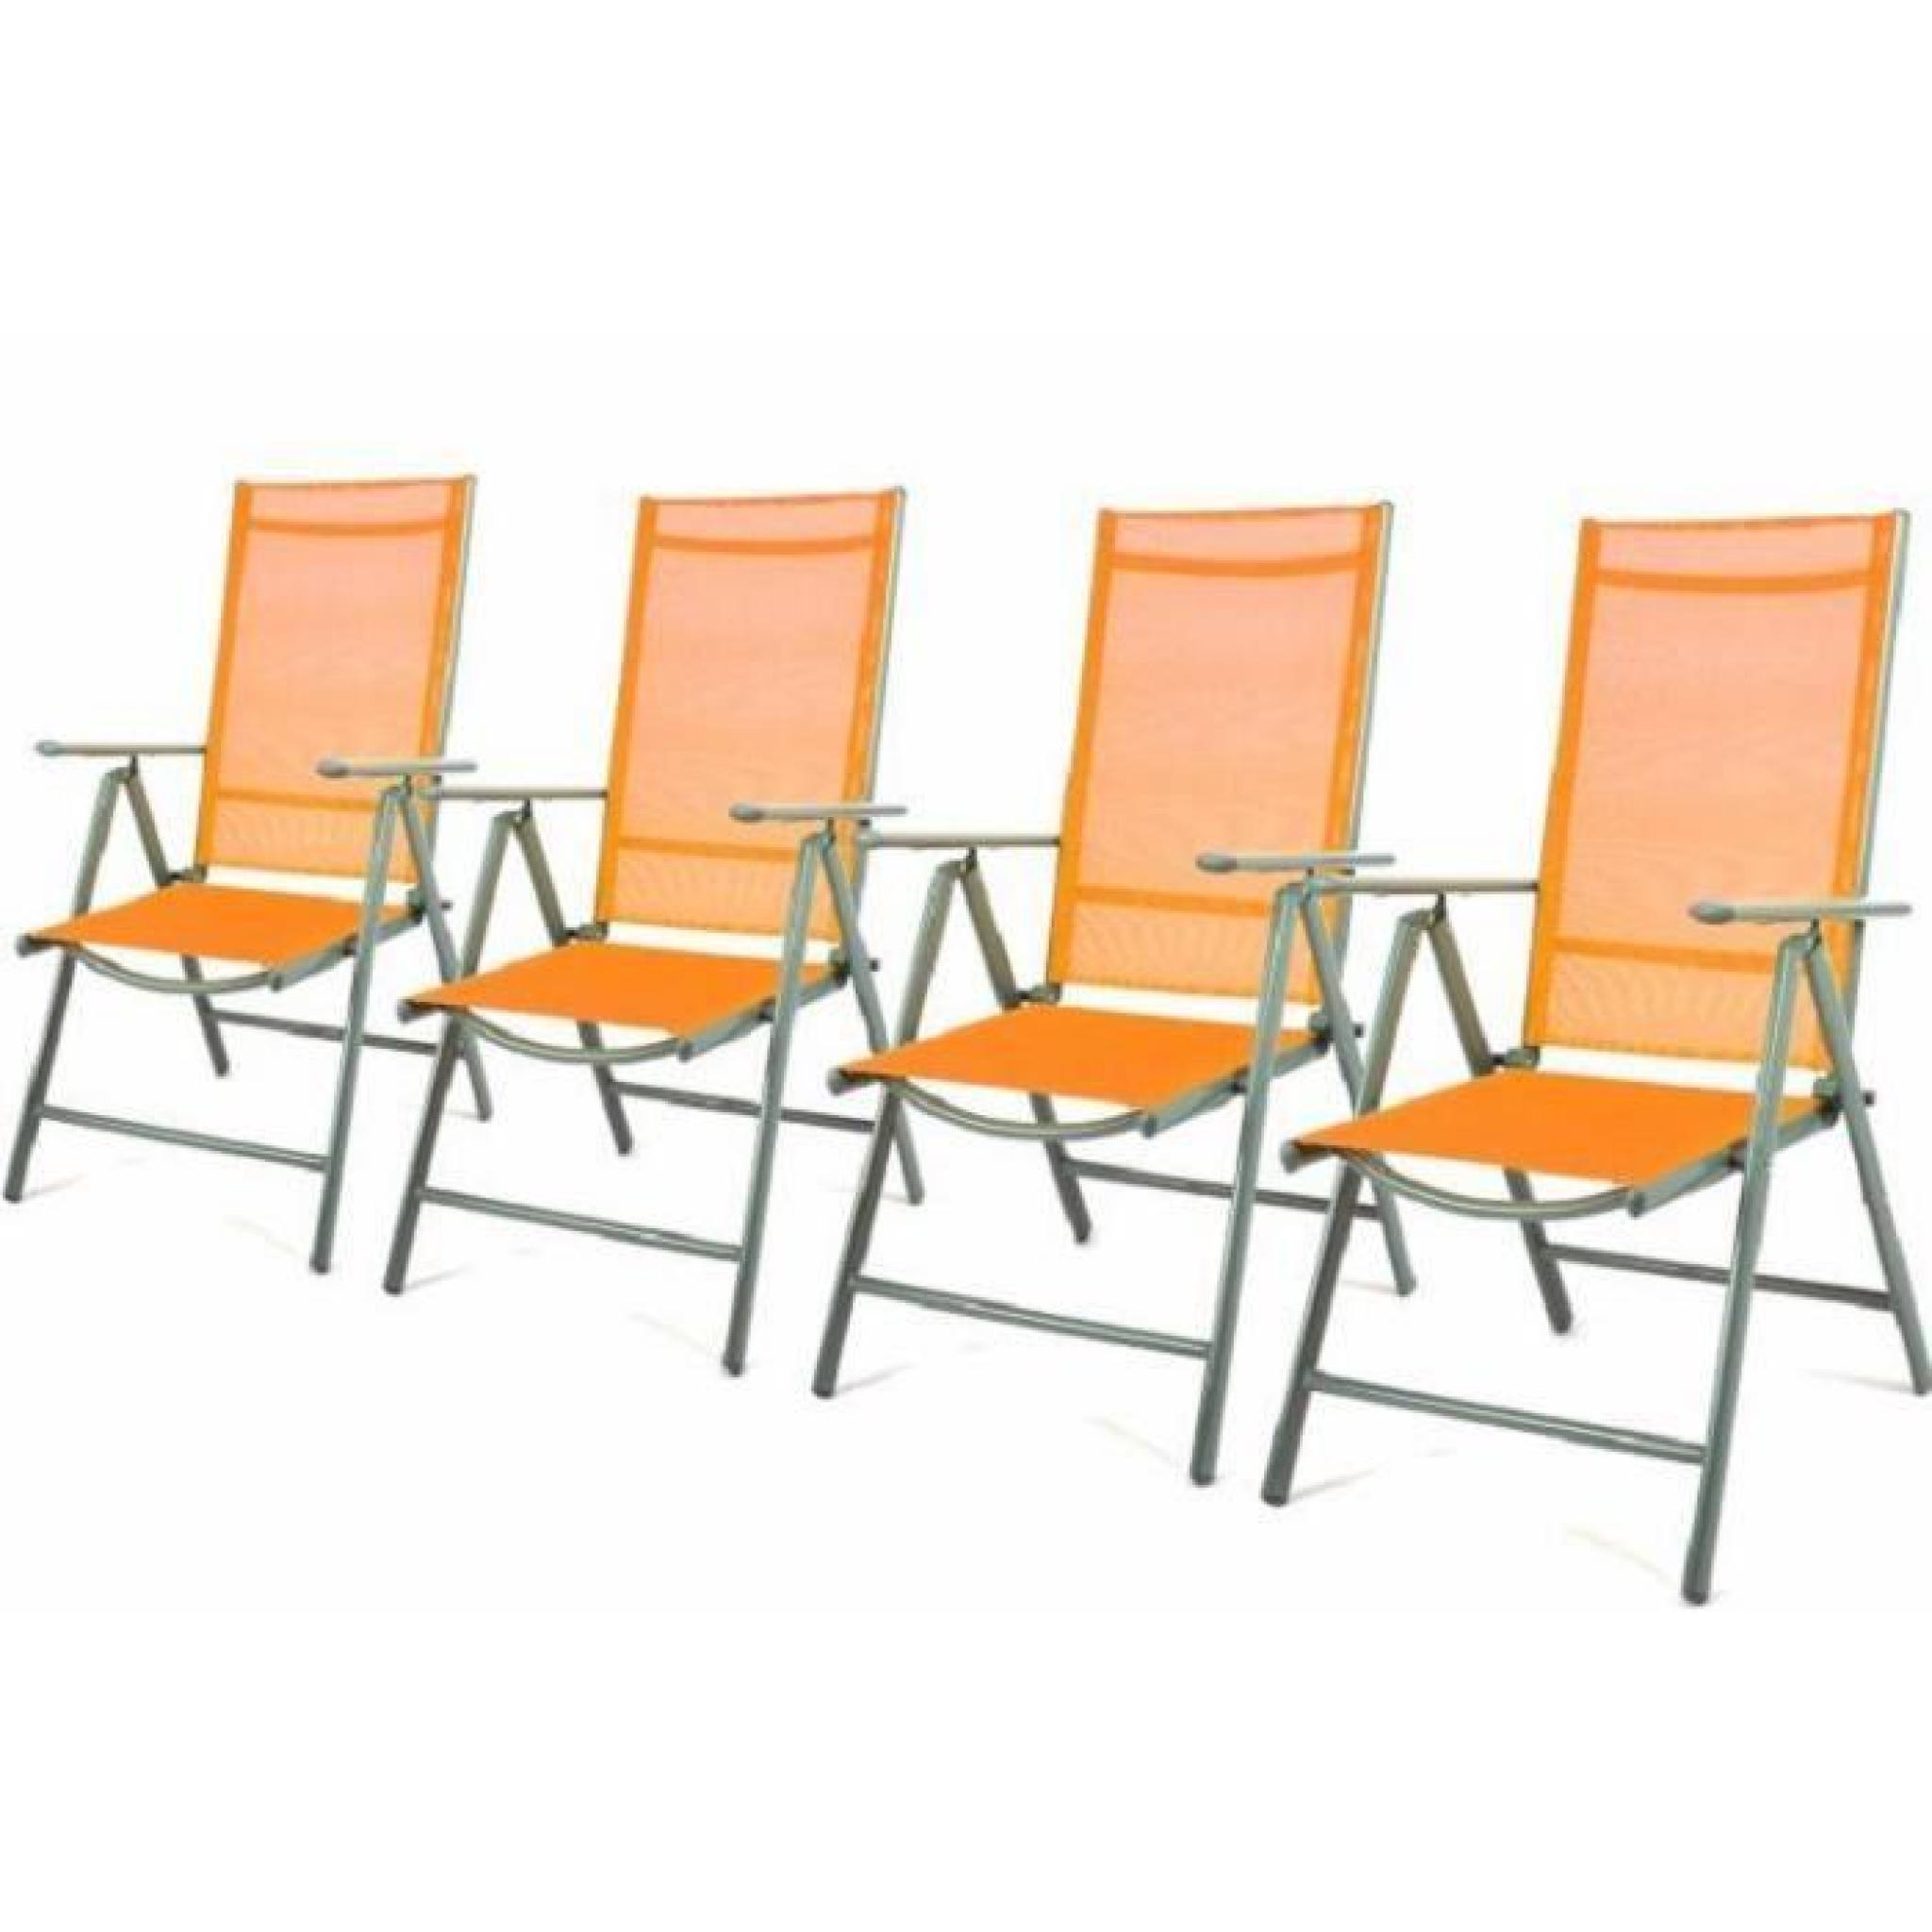 4 fauteuils pliant Orange réglable en alu textilene